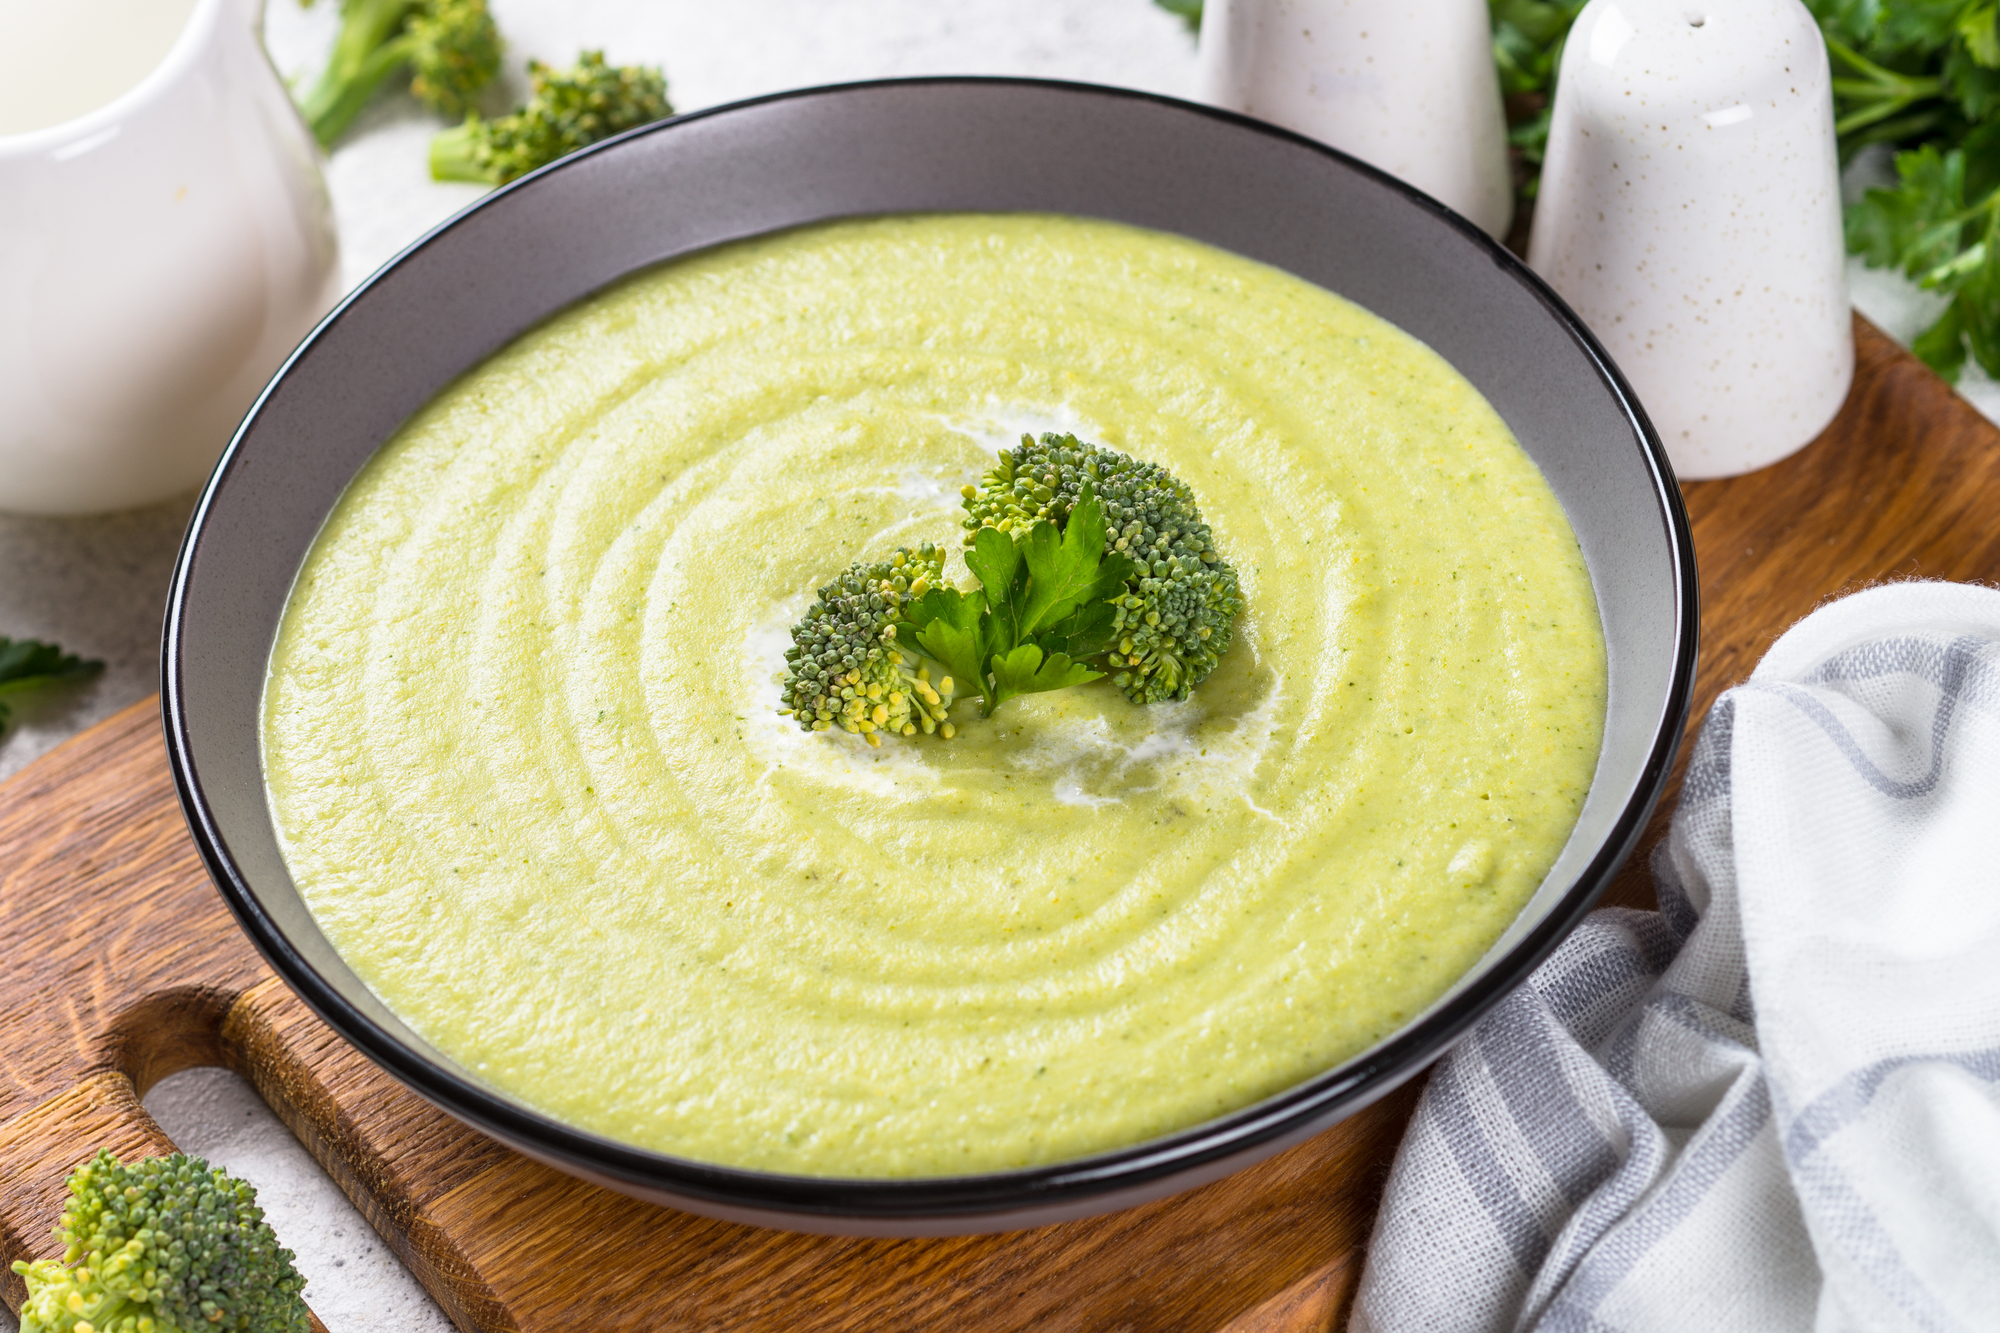 Recept Jemná brokolicová polévka se smetanou